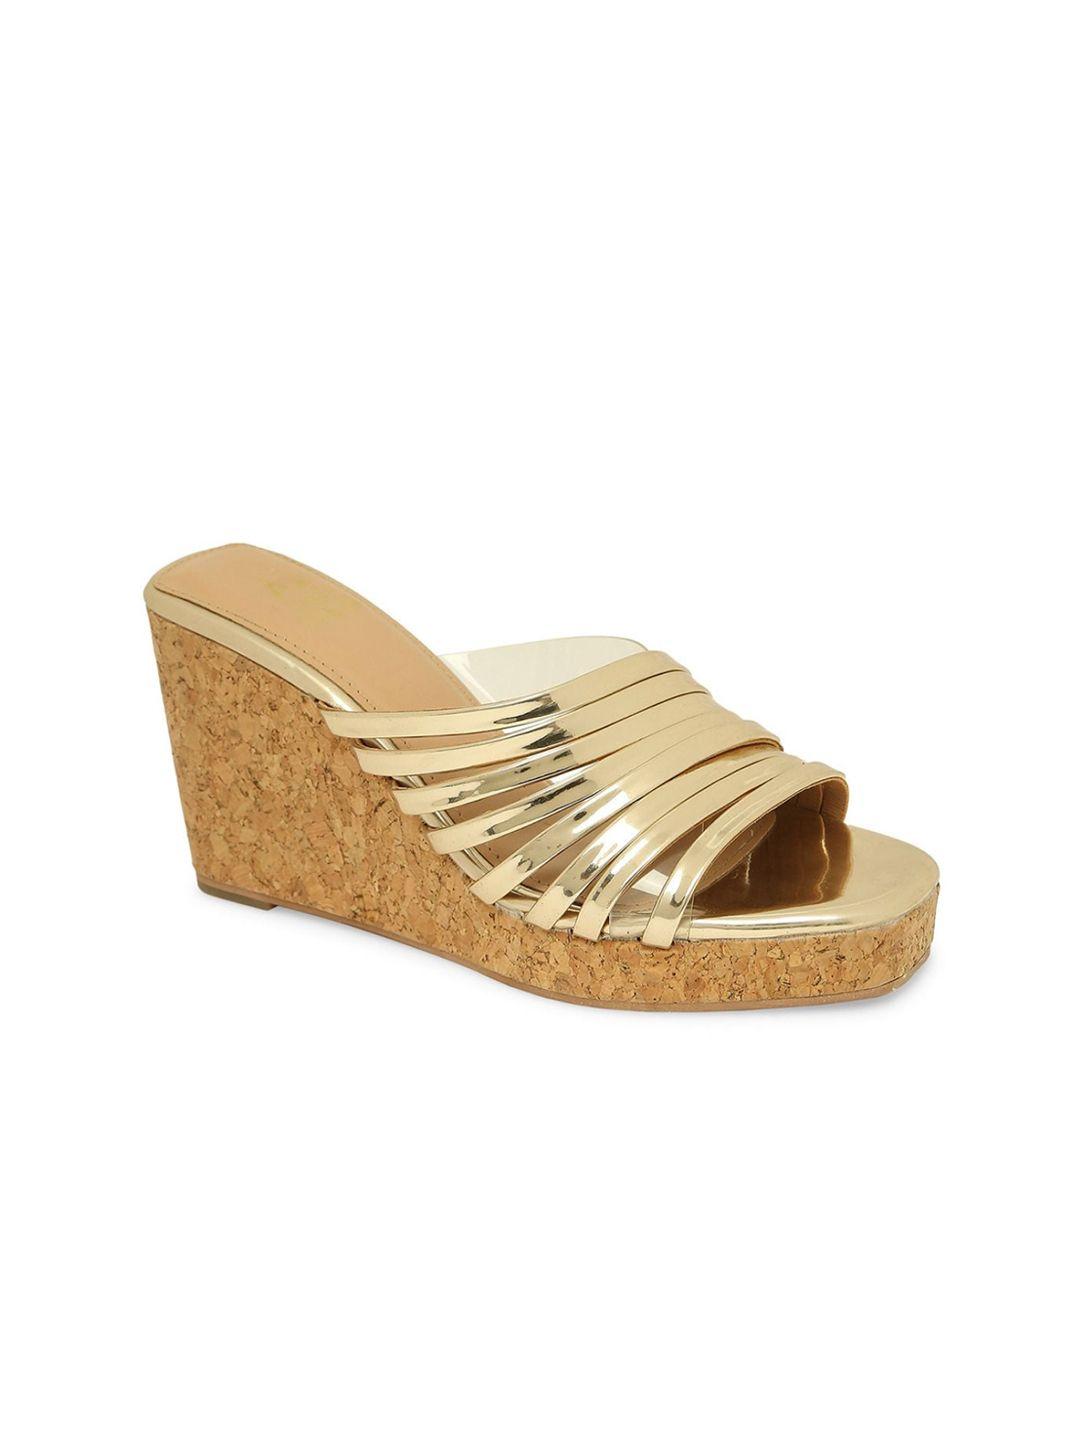 tao paris gold-toned wedge sandals